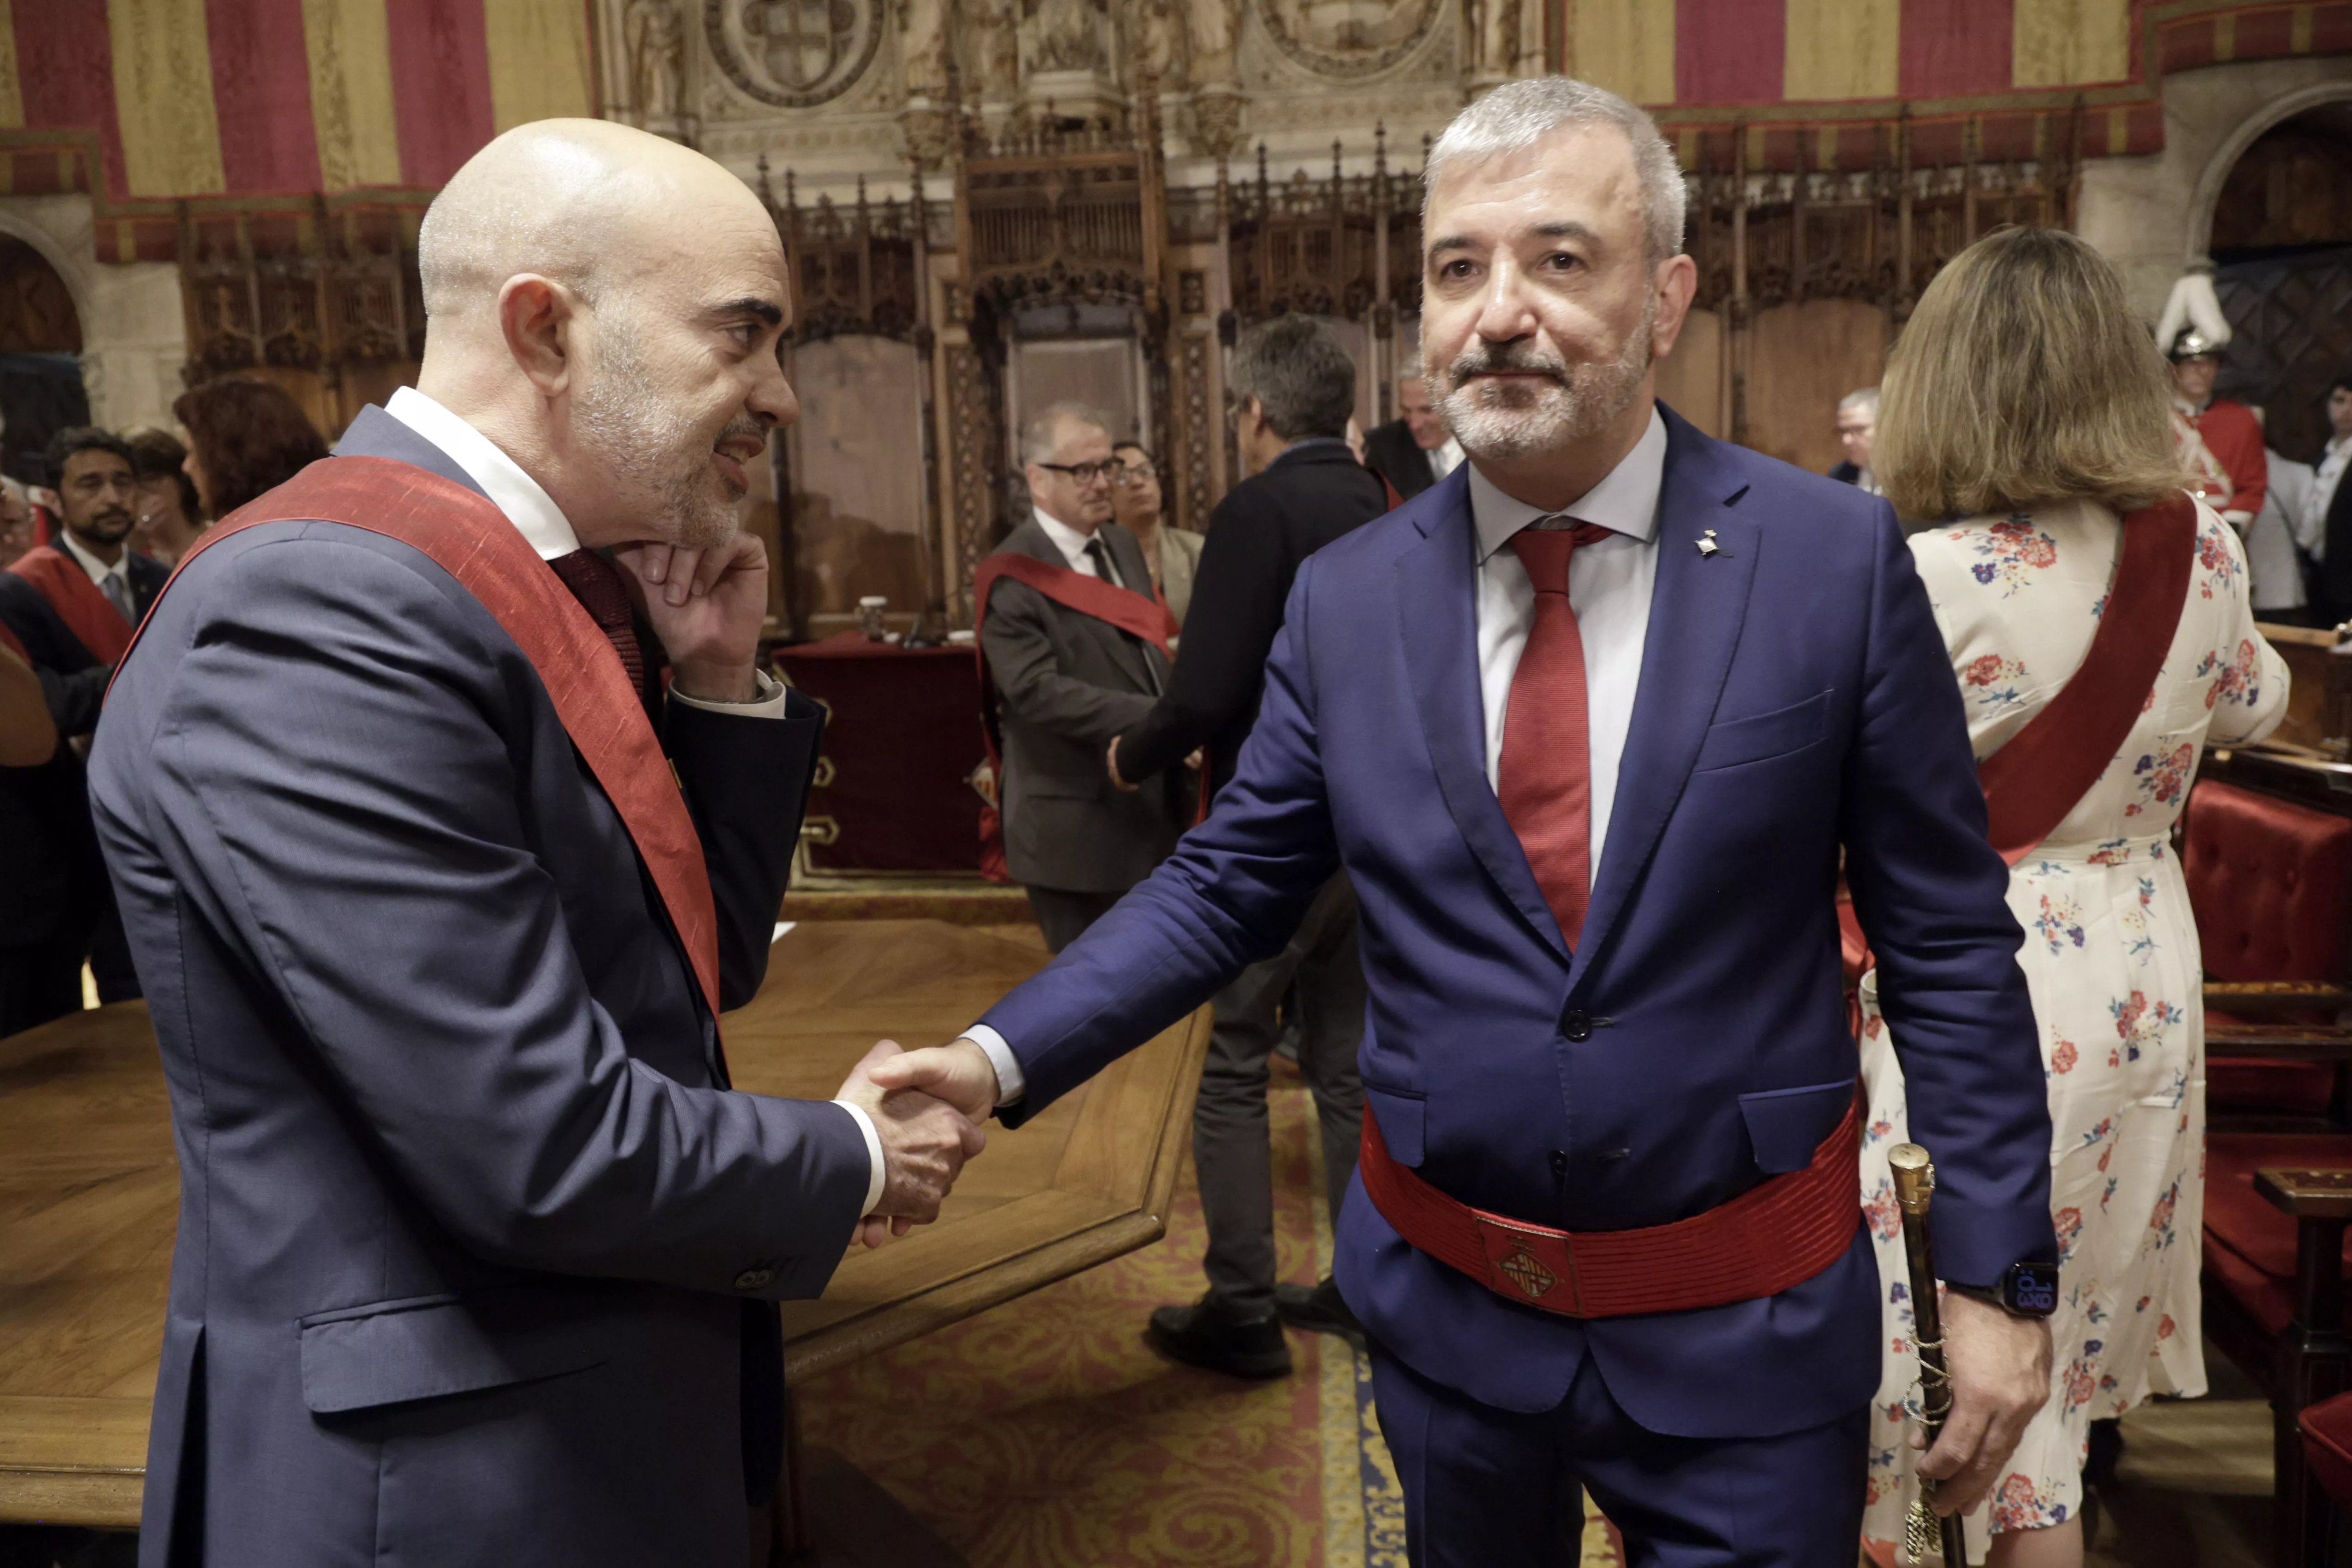 Daniel Sirera y Jaume Collboni se dan la mano en el acto de investidura del Ayuntamiento de Barcelona / EFE